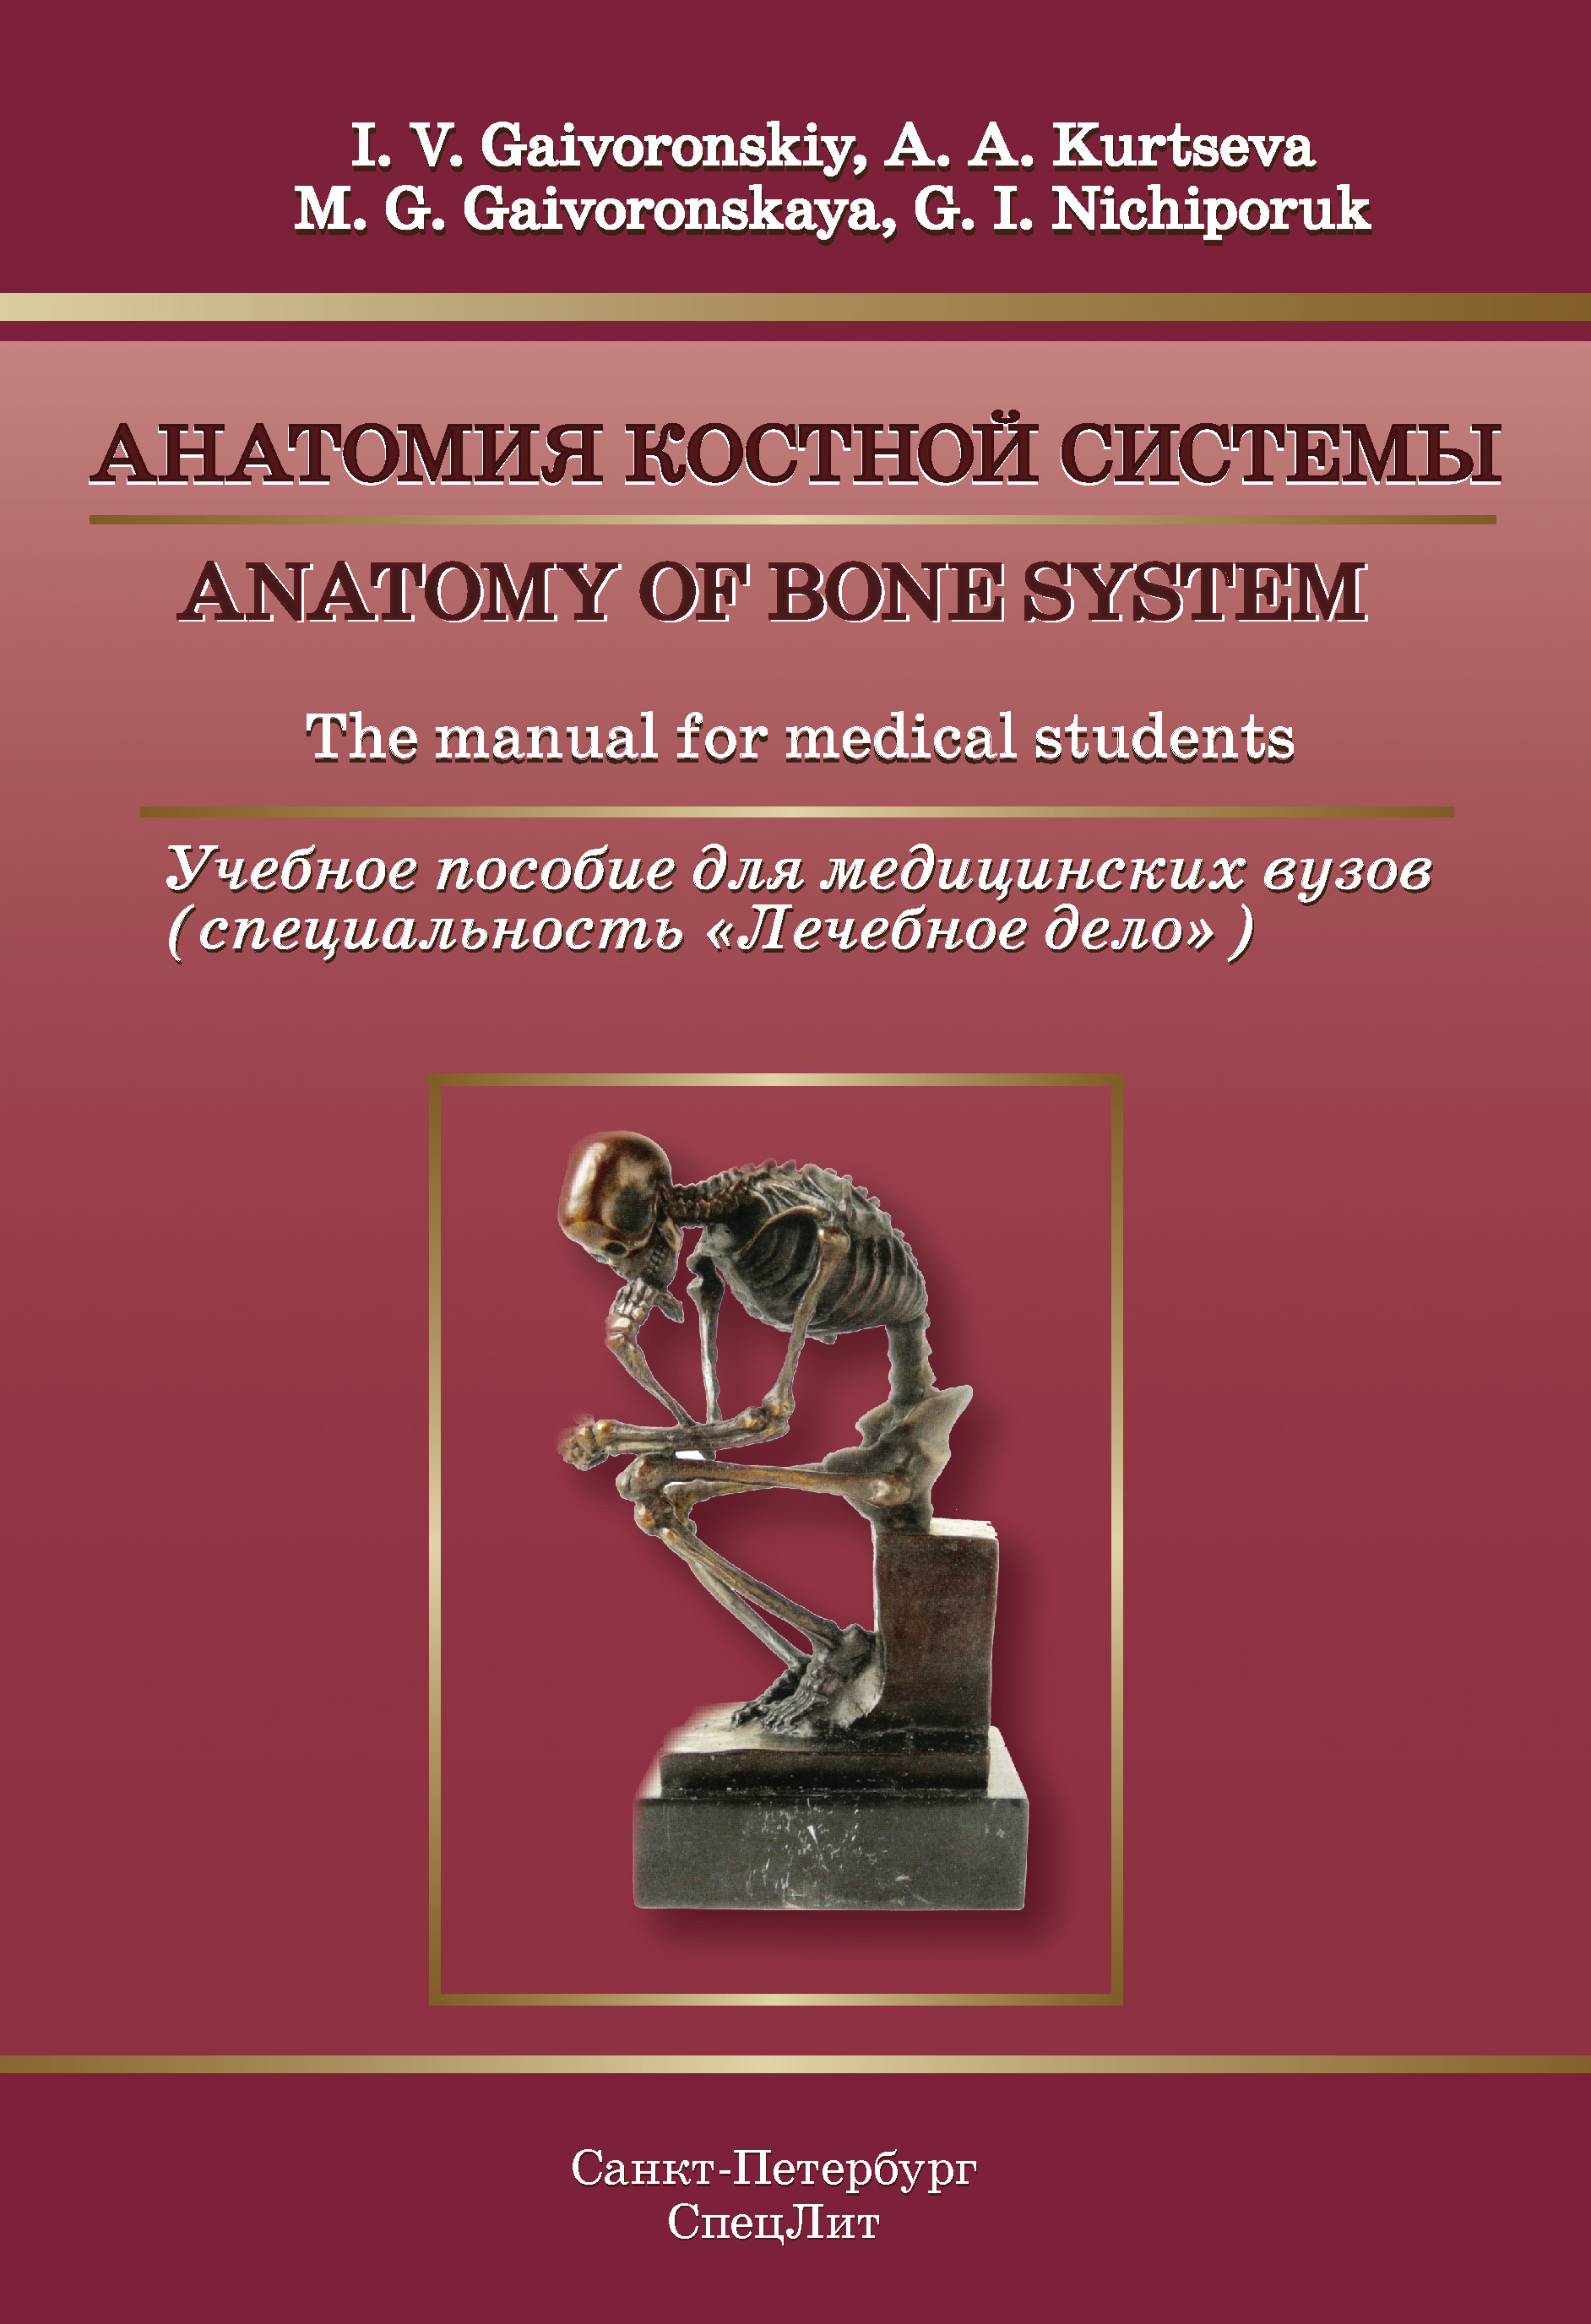 Anatomy of bone system. The manual for medical students /Анатомия костной системы. Учебное пособие для медицинских вузов